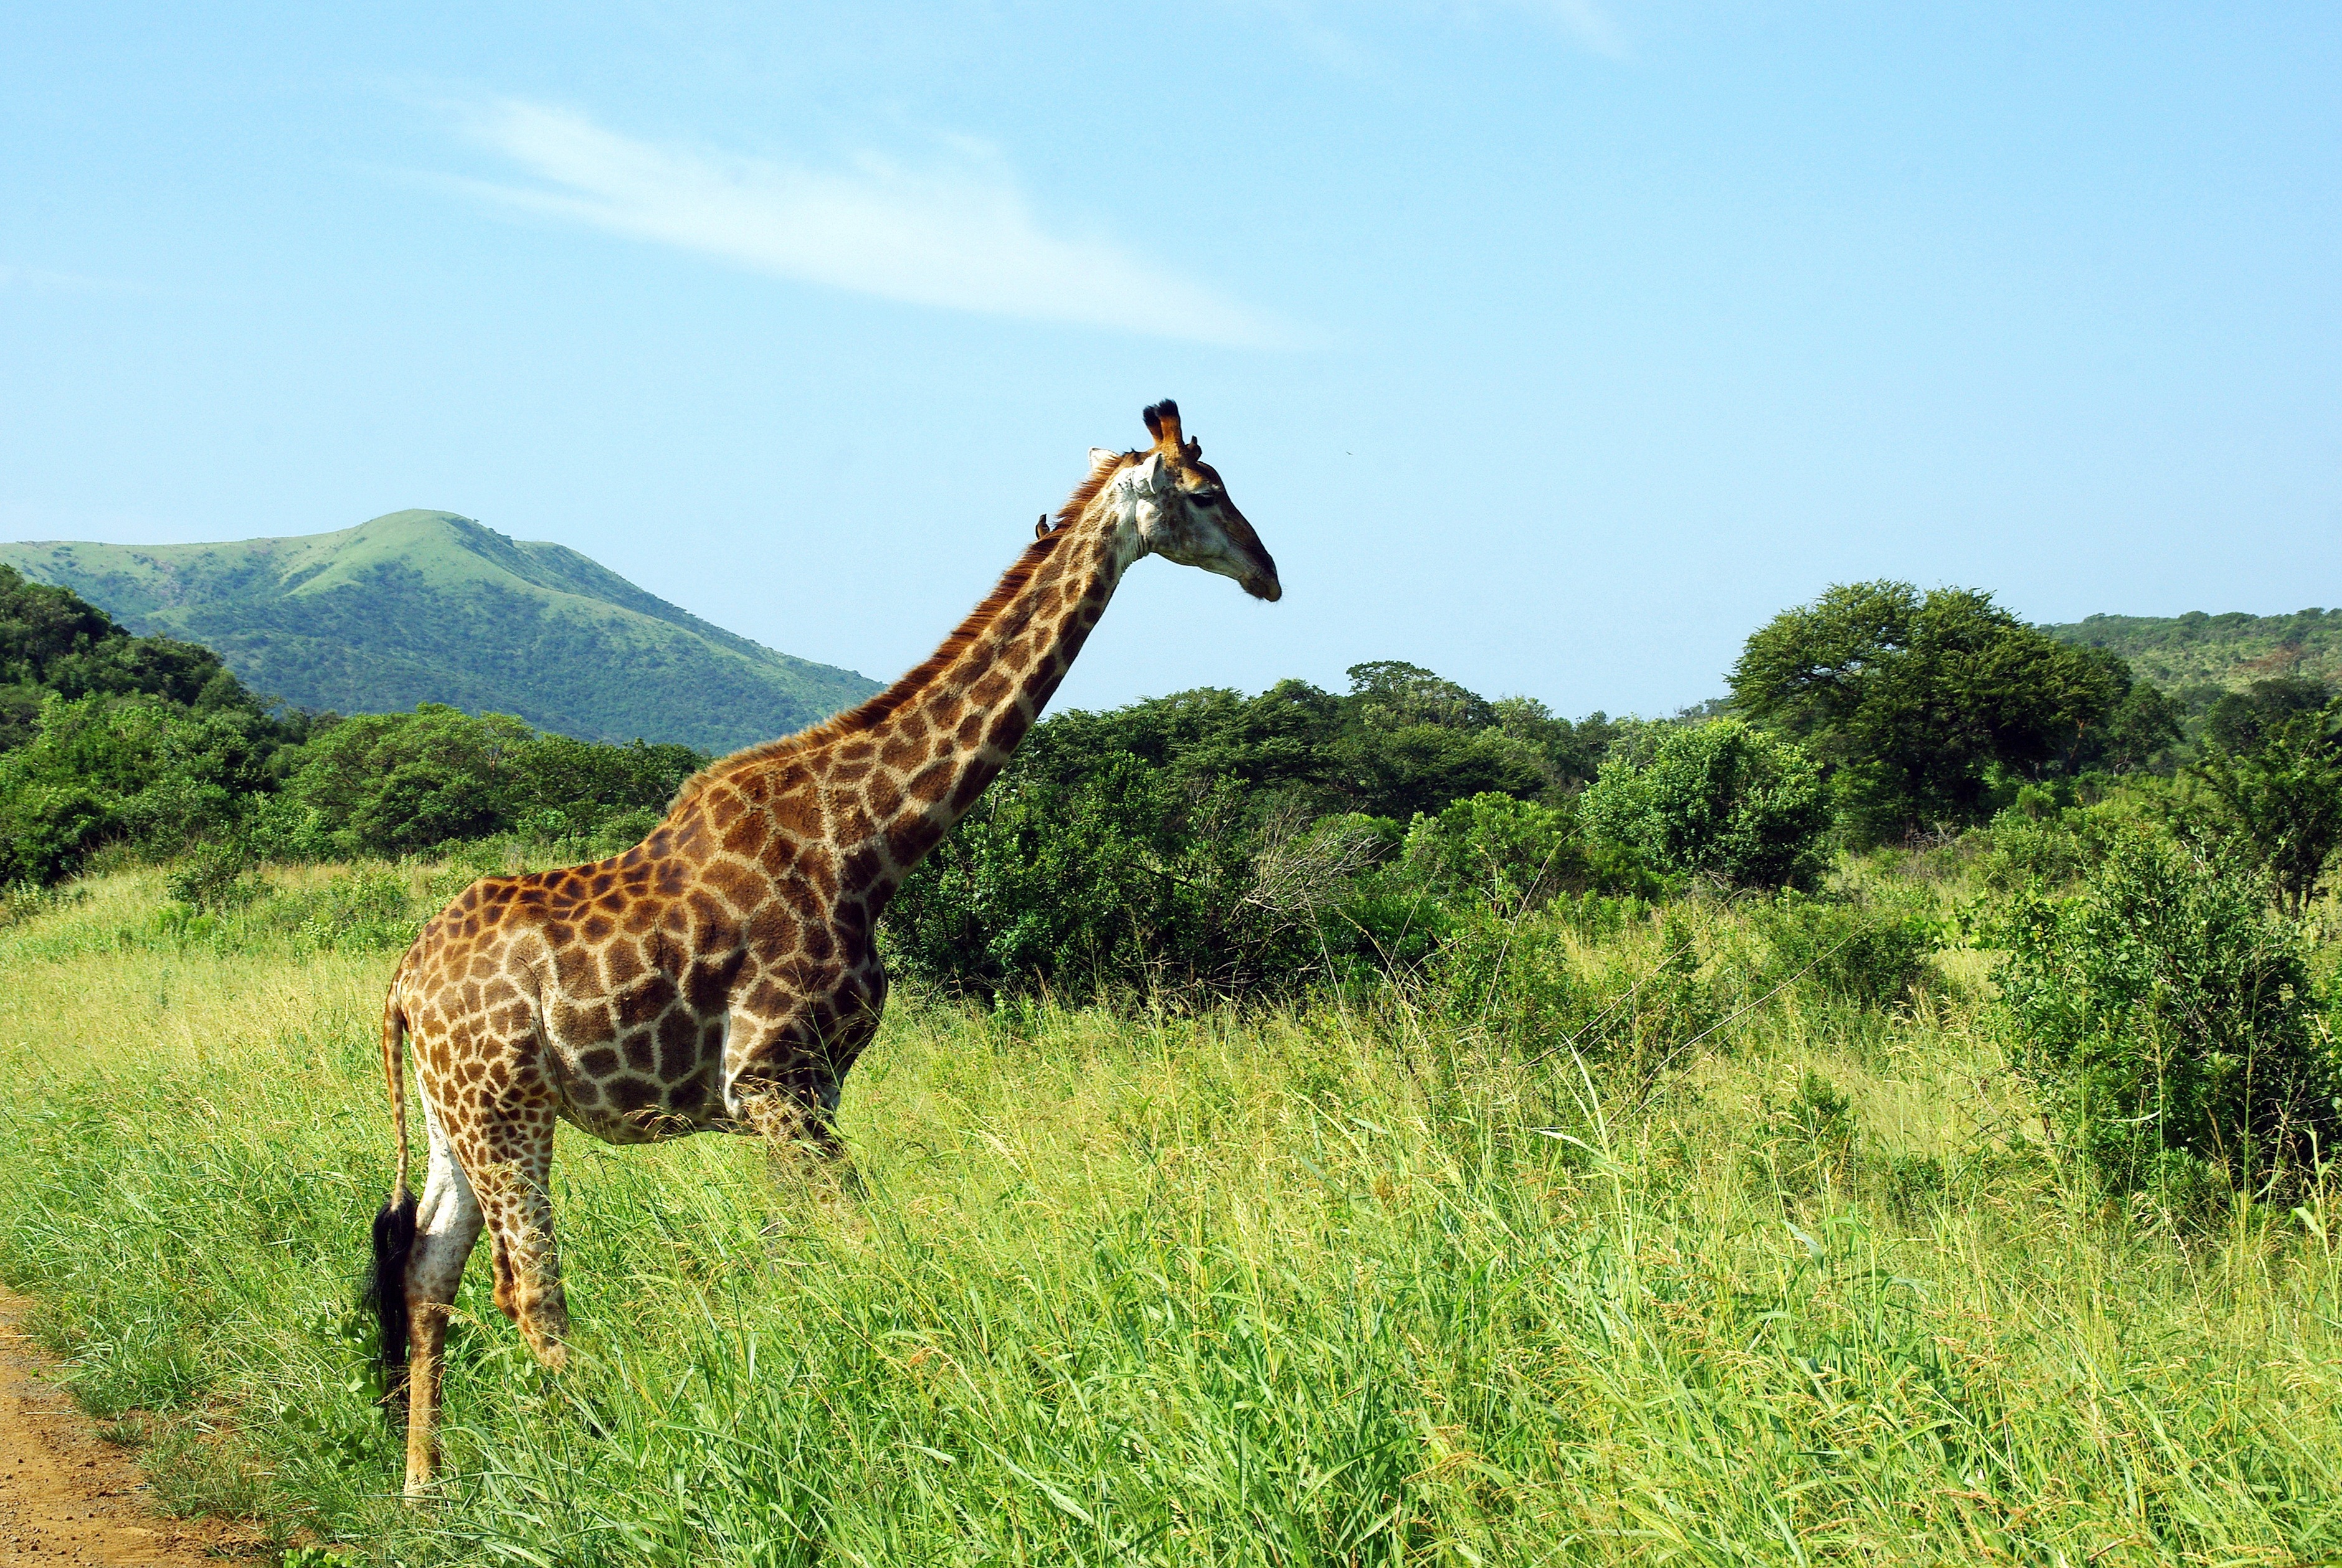 Giraffe in Hluhluwe–Imfolozi Park Africa by DEZALB